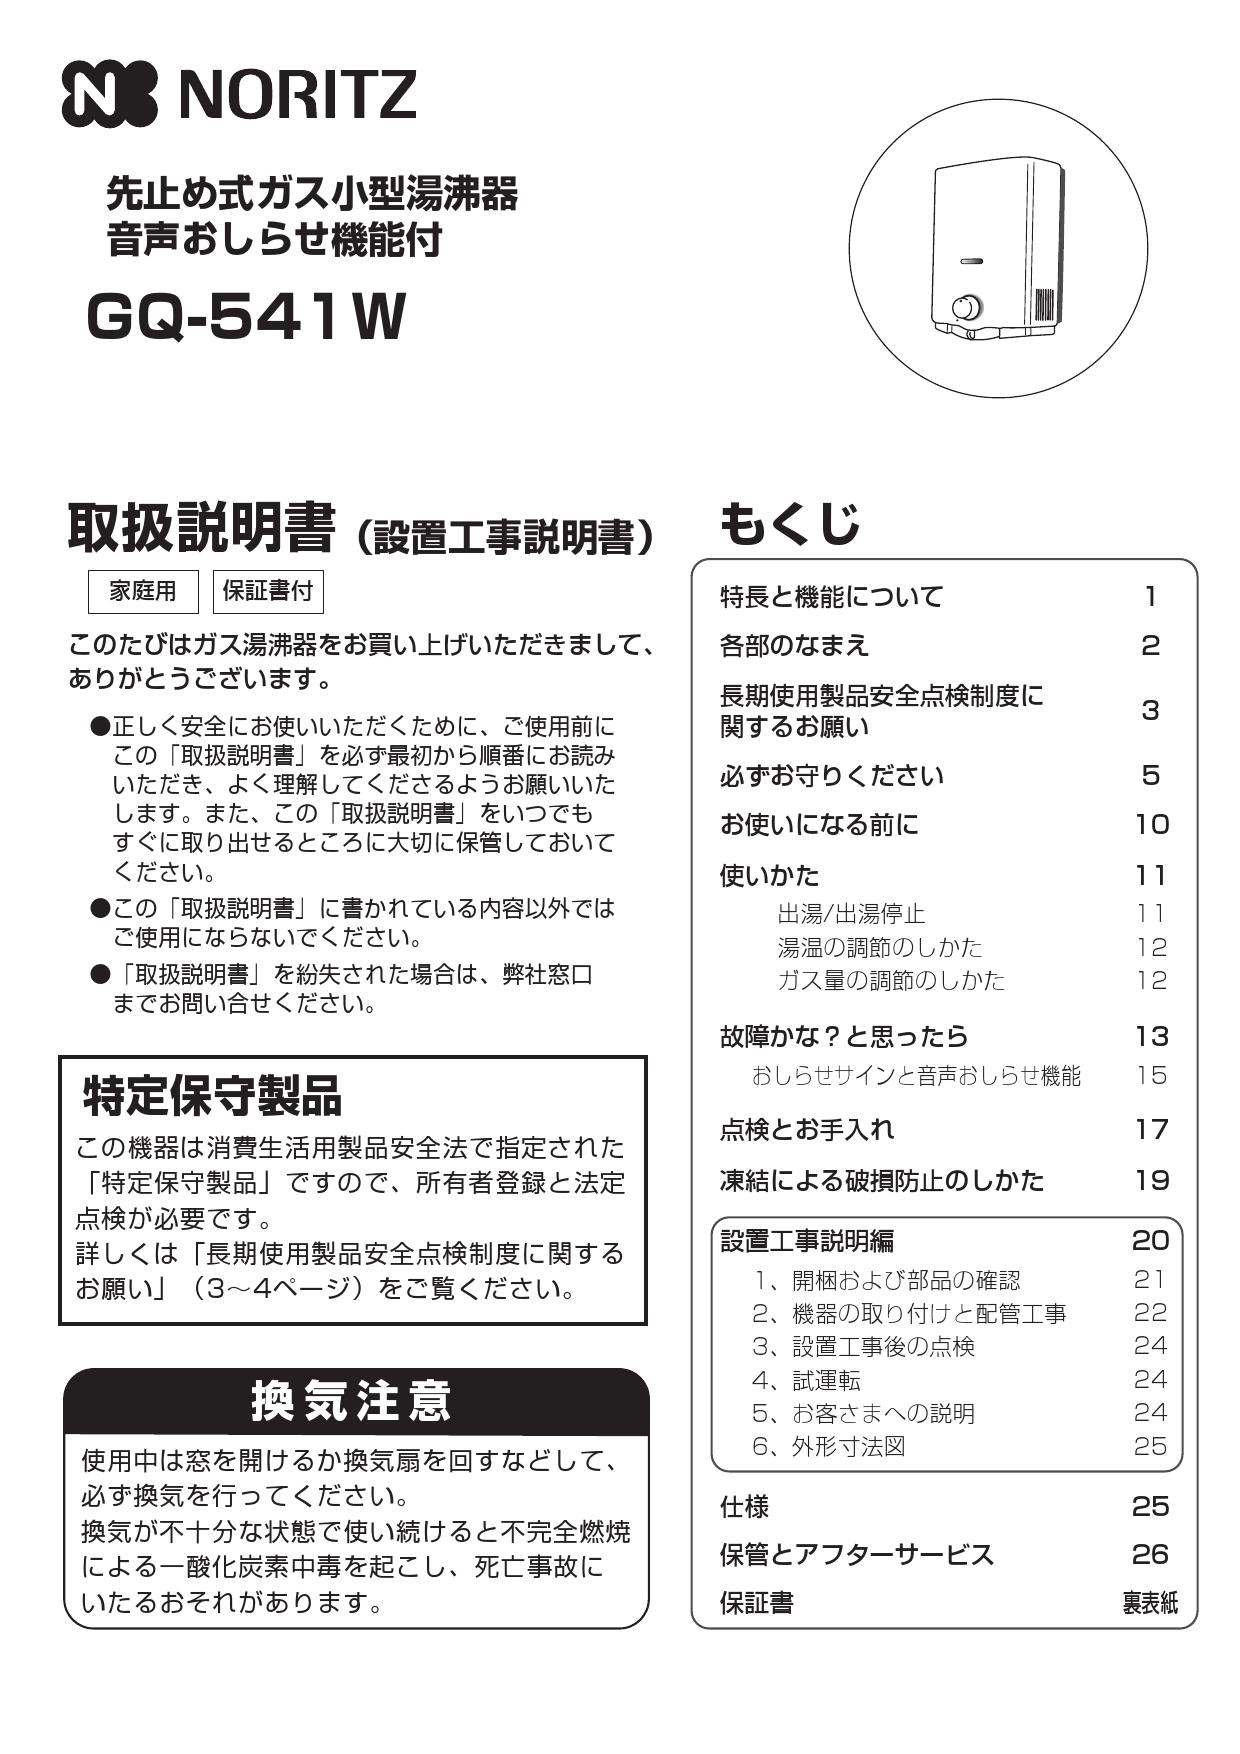 ノーリツ GQ-541W取扱説明書 商品図面 | 通販 プロストア ダイレクト